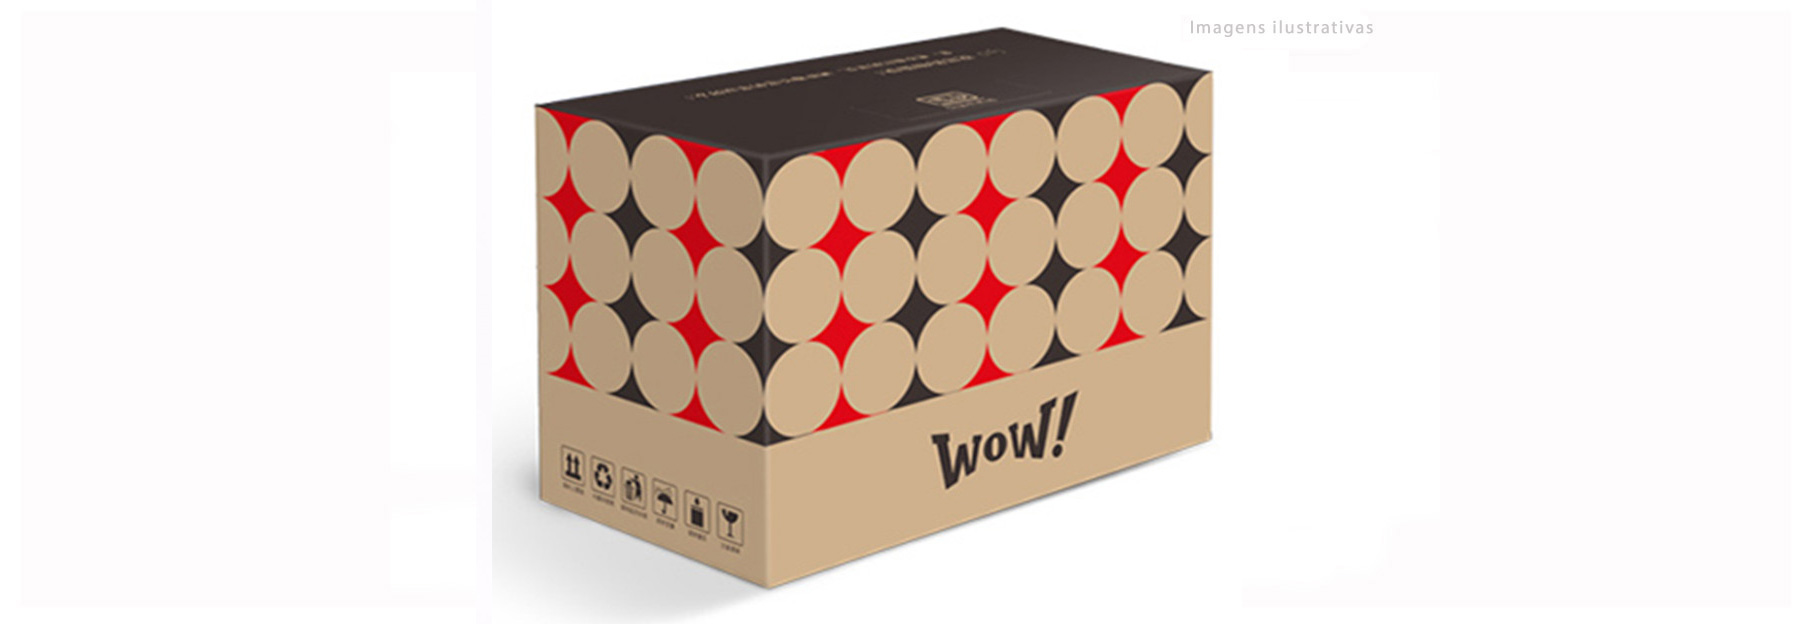 Fabricamos caixas de papelão personalizadas de acordo com as necessidades de nossos clientes.